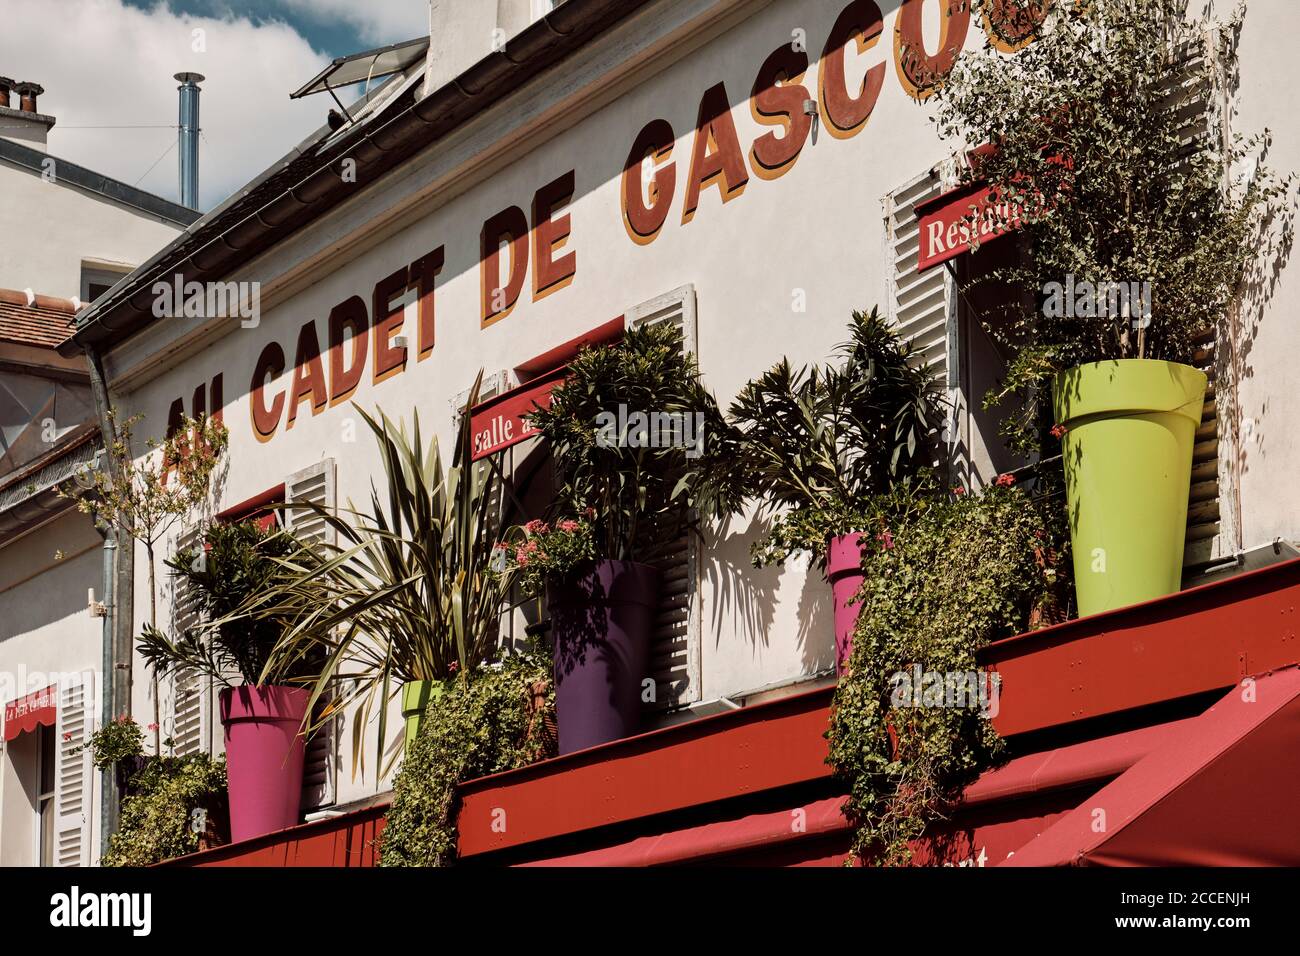 Europa, Frankreich, Paris, Montmartre, Sacre Coeur, Restaurant mit schönen Blumen auf dem Balkon Stockfoto